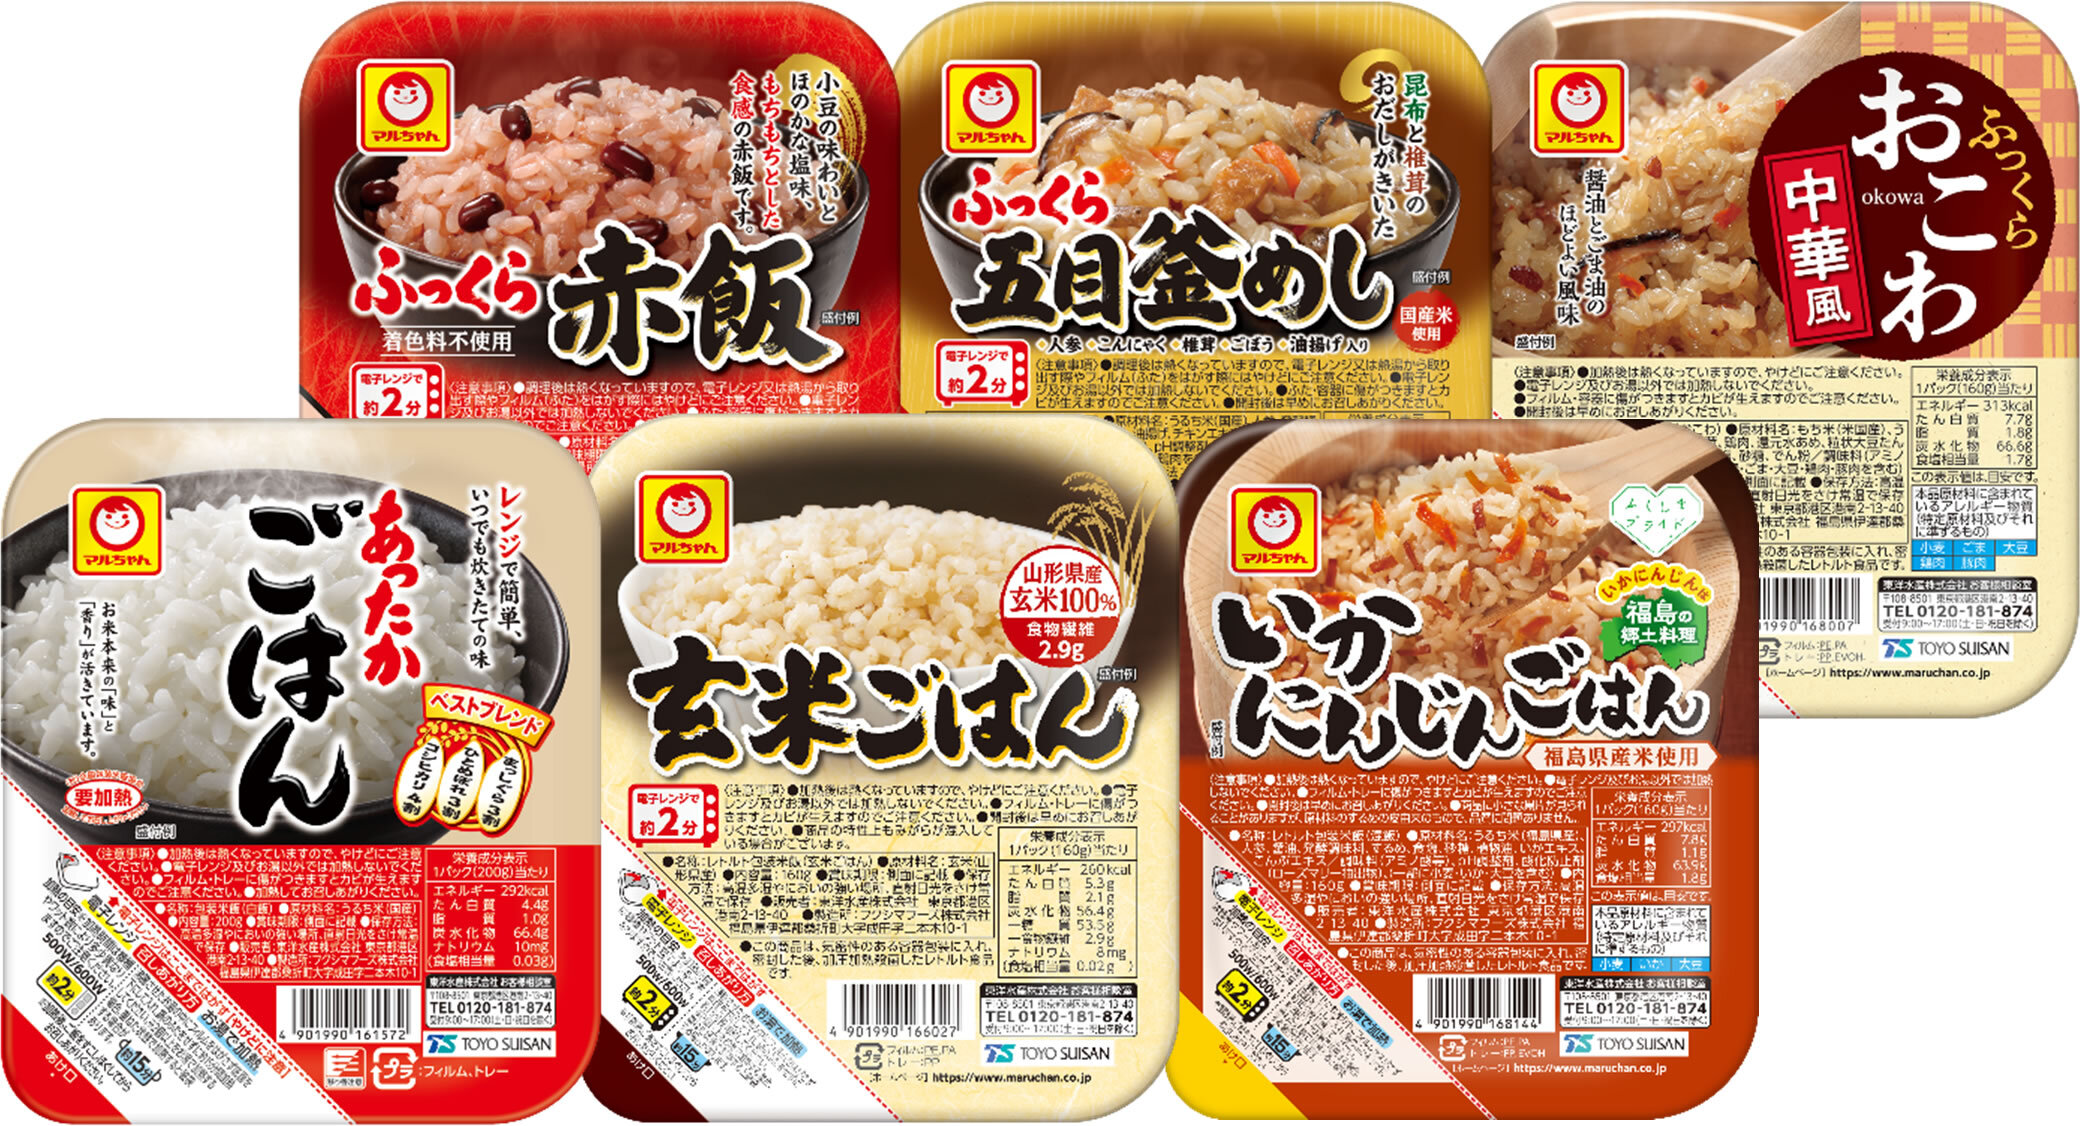 米飯商品集合写真.jpg